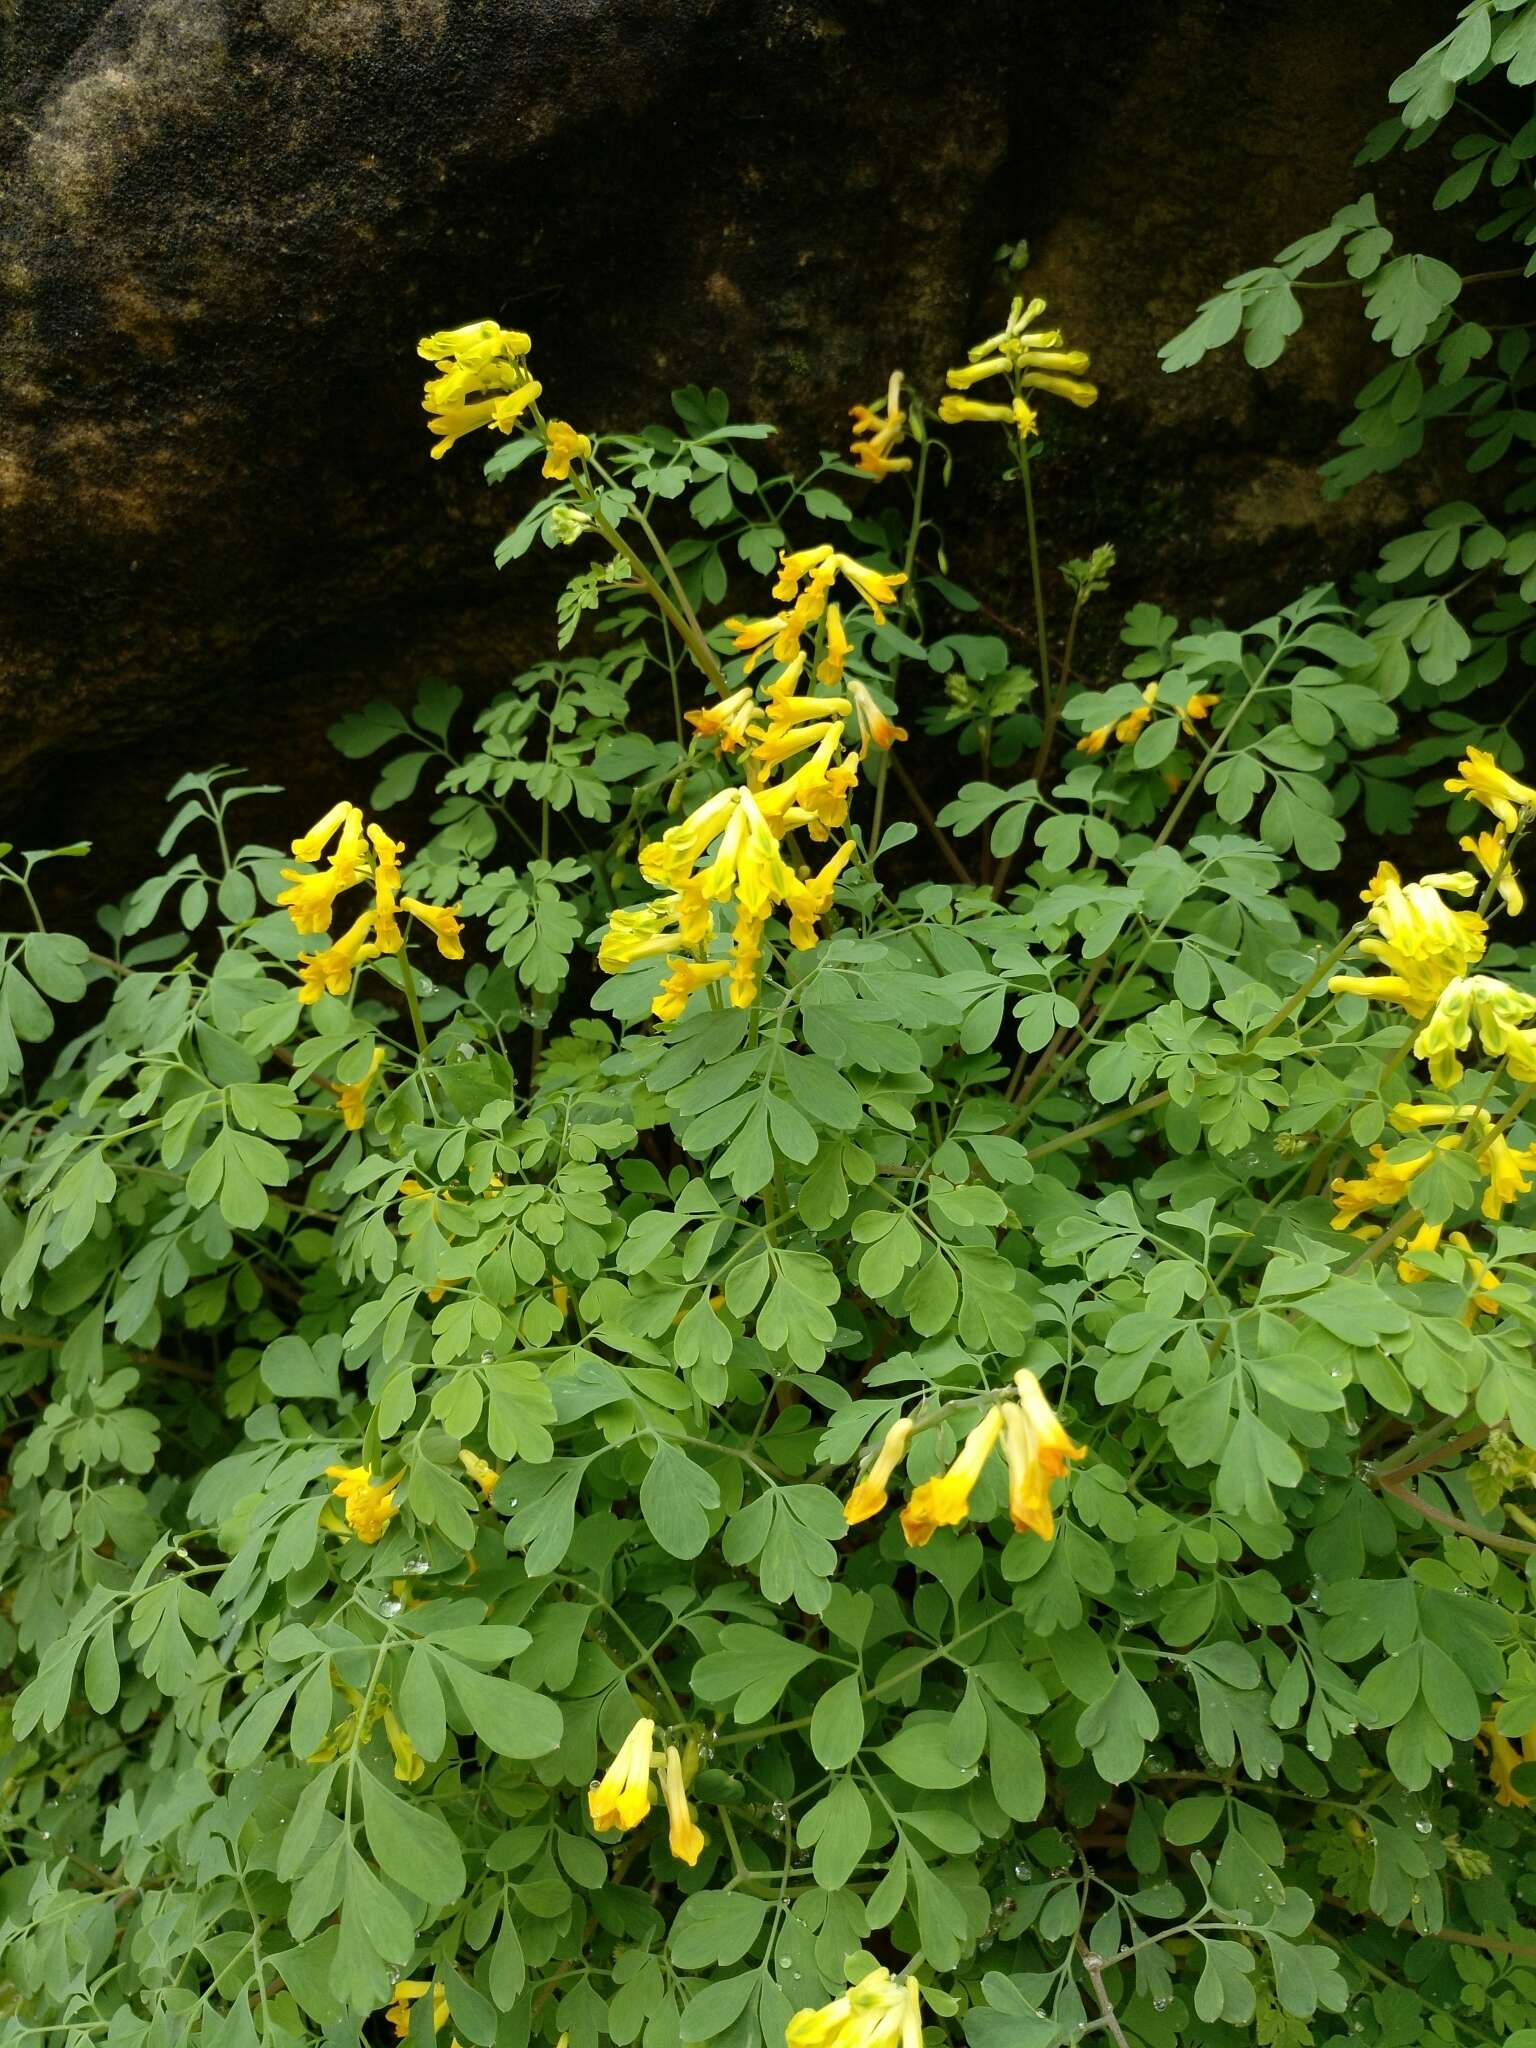 Image of yellow corydalis